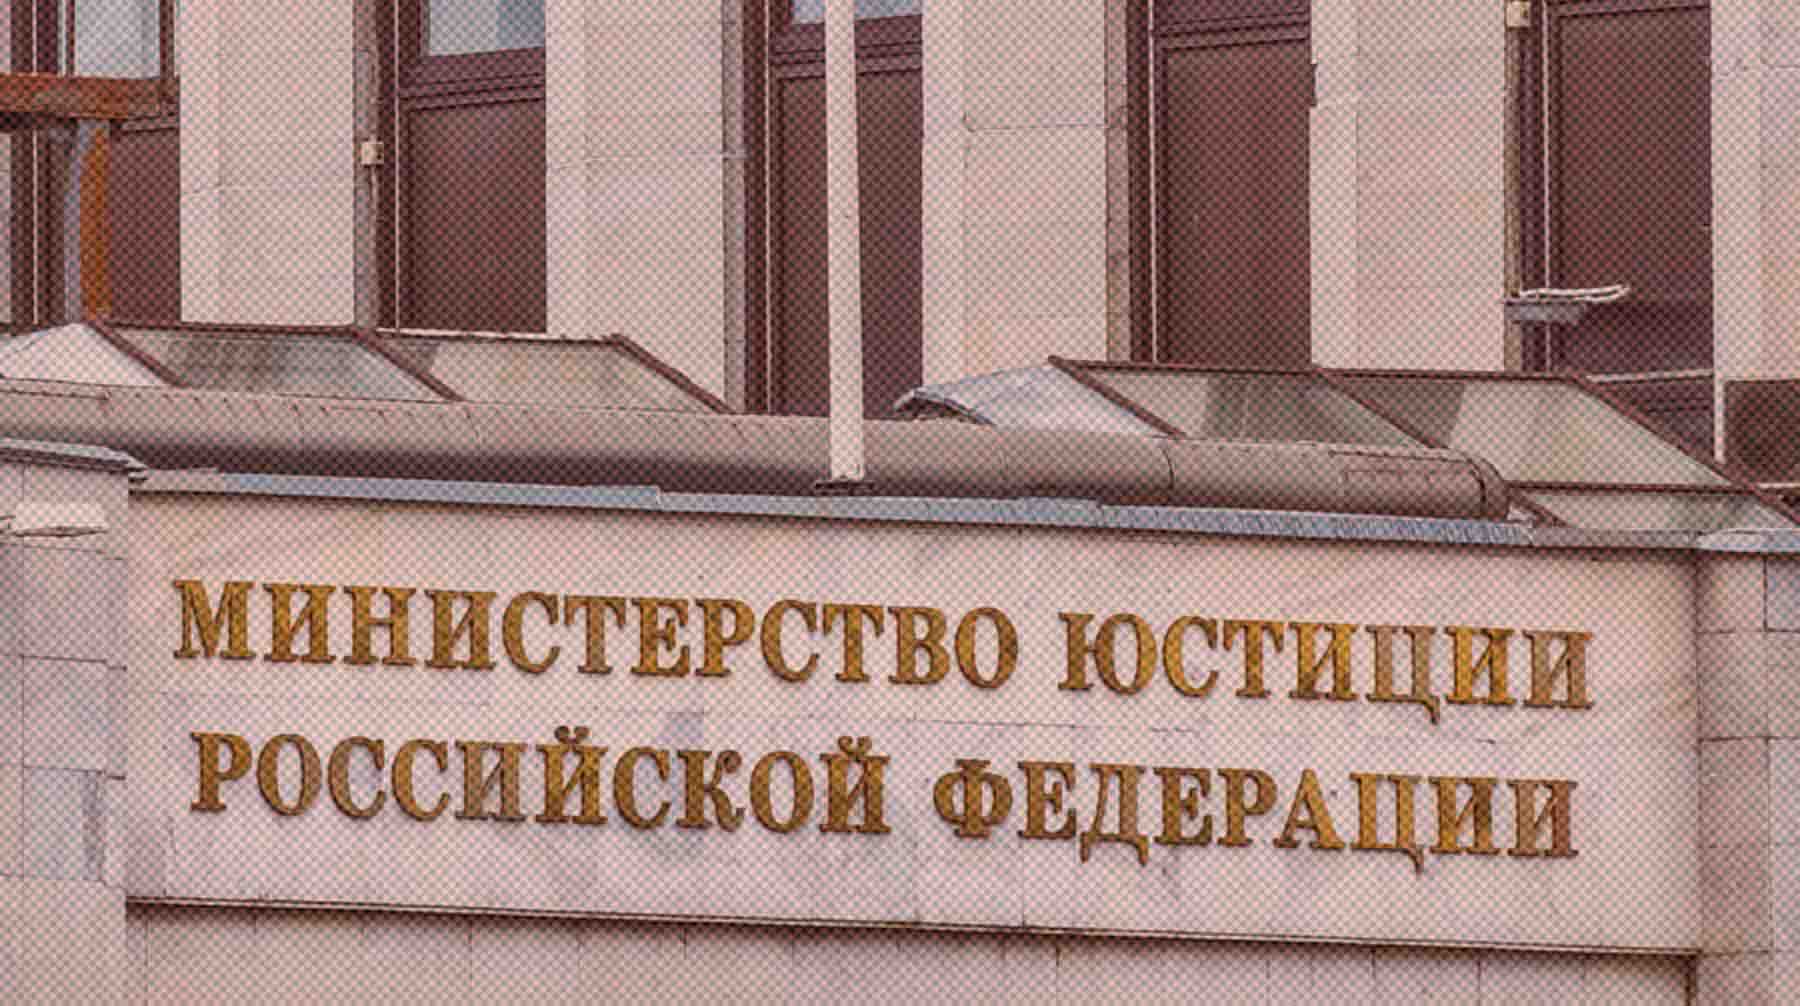 В июле Сыктывкарский городской суд запретил киноленту Фото: Global Look Press / Константин Кокошкин